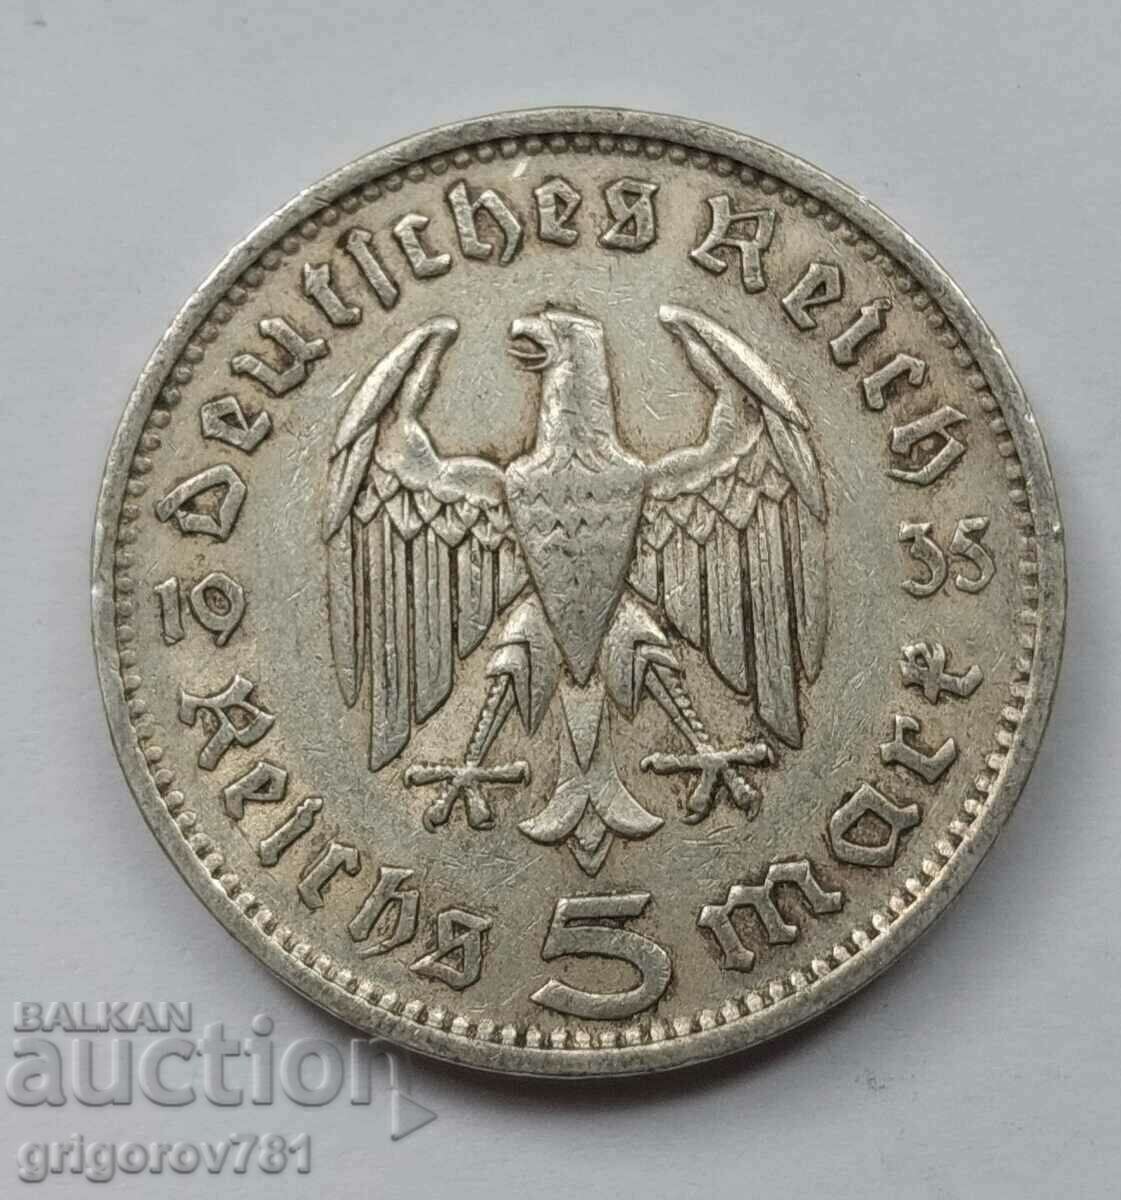 5 Mark Silver Γερμανία 1935 F III Reich Ασημένιο νόμισμα #12